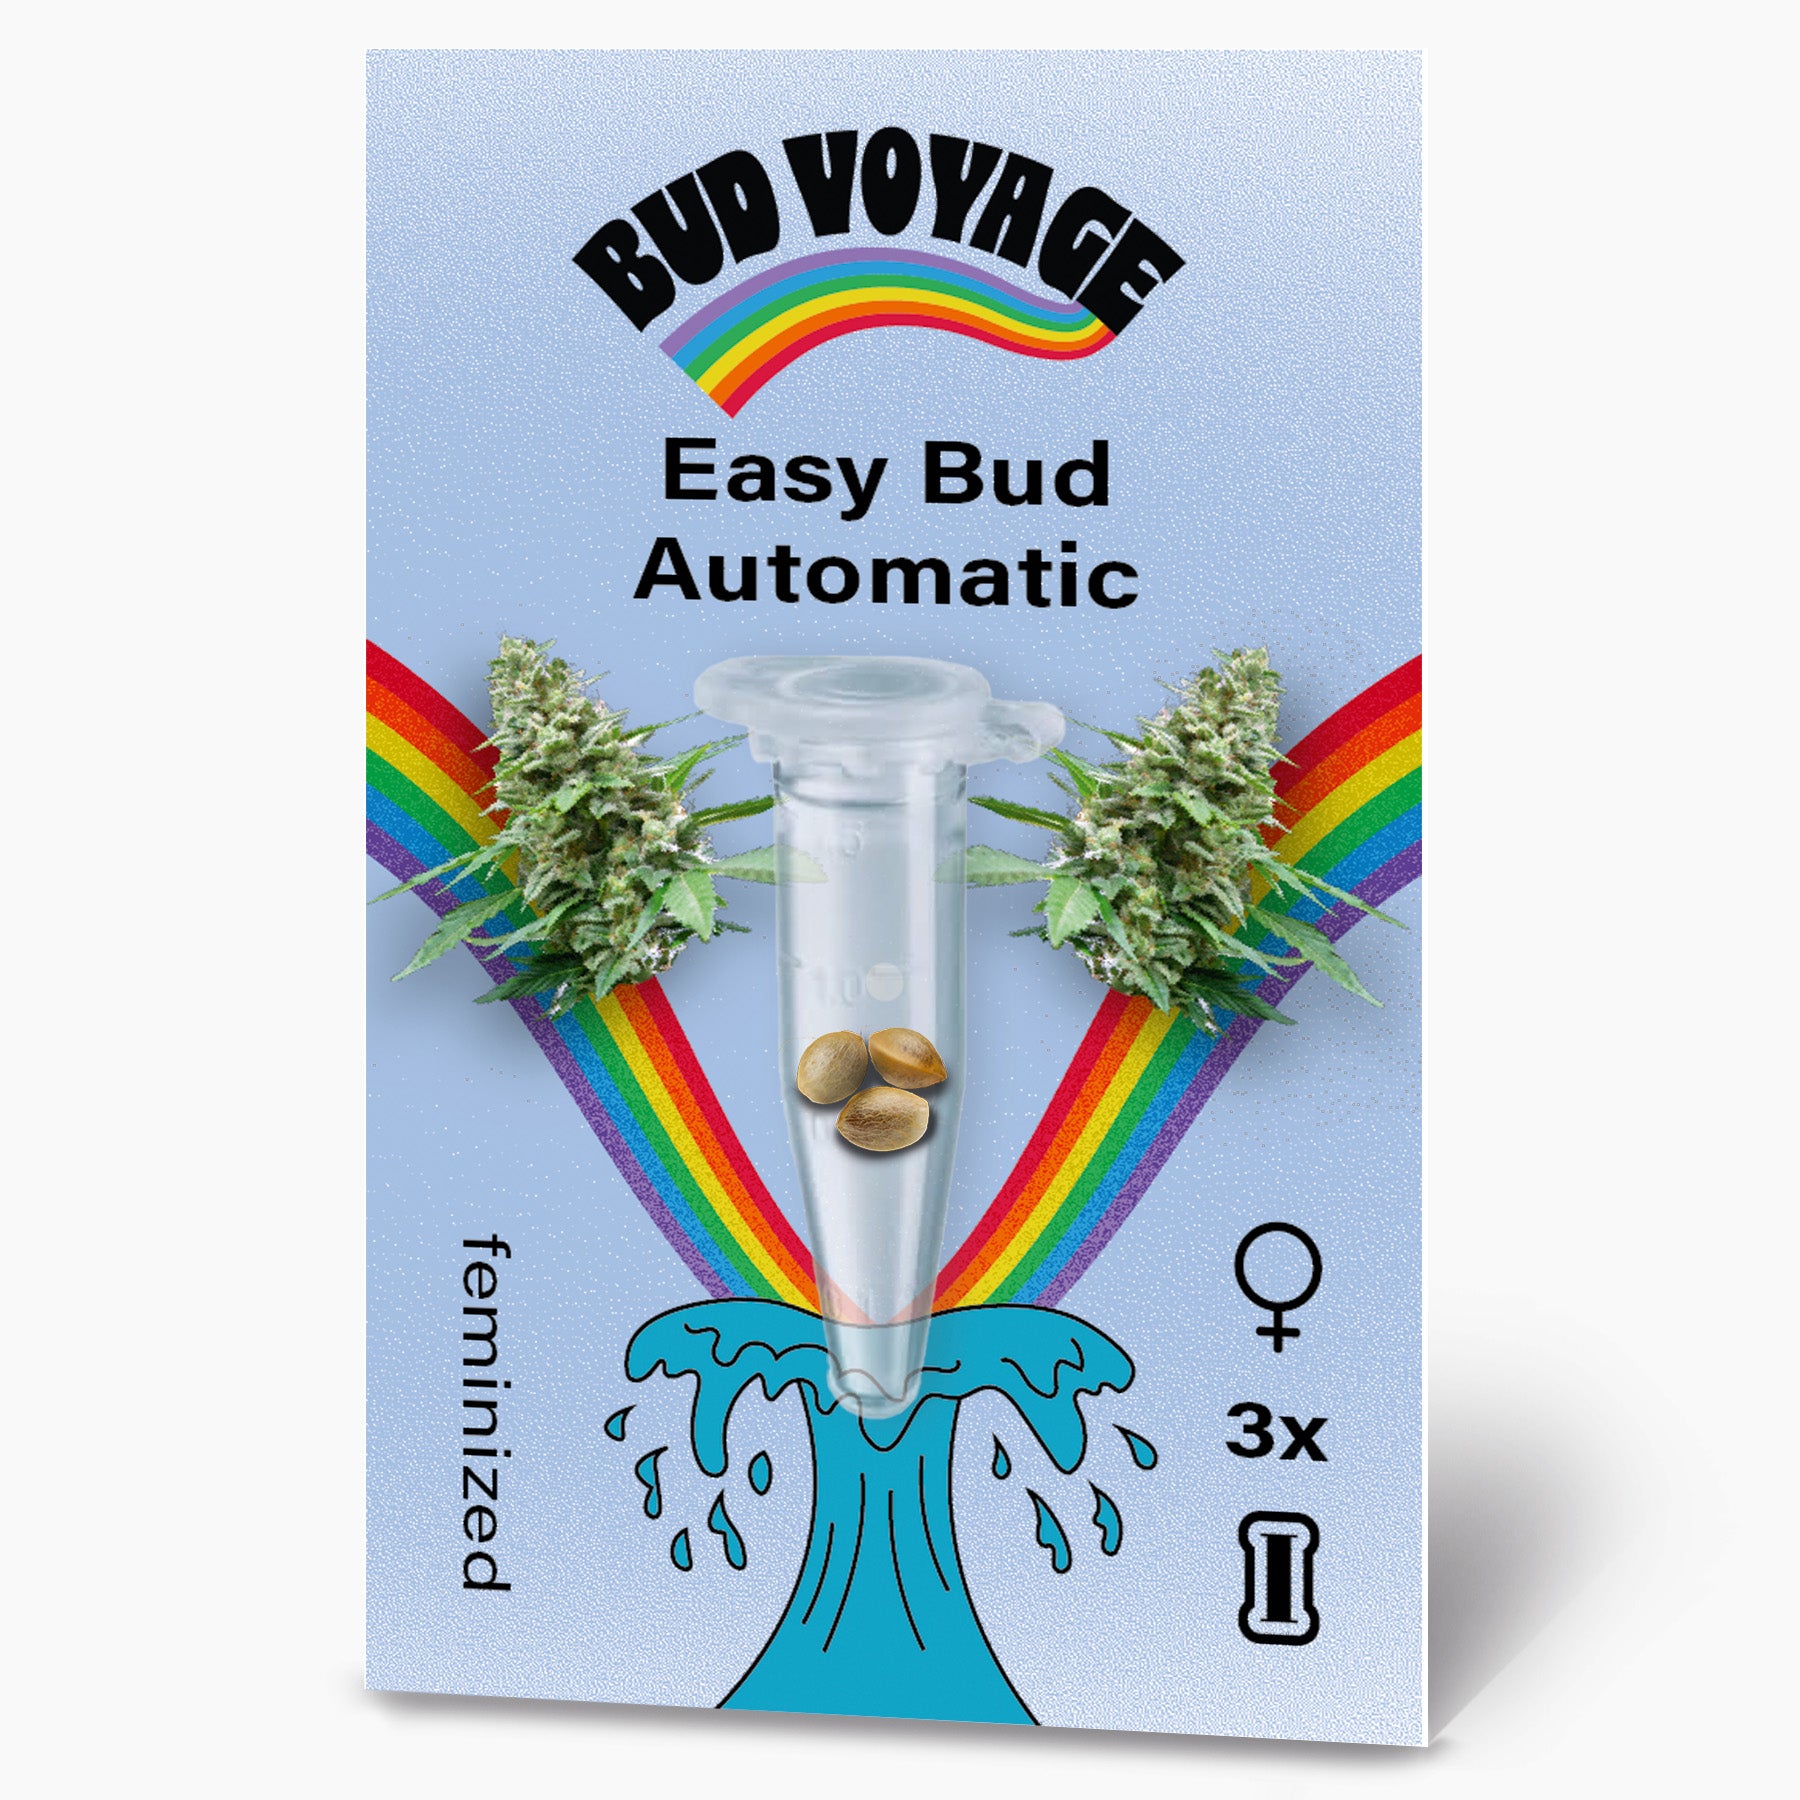 Hanfsamen BudVoyage Easy Bud Auto (Zitrone, angenehm leicht, wie vor 20 Jahren)